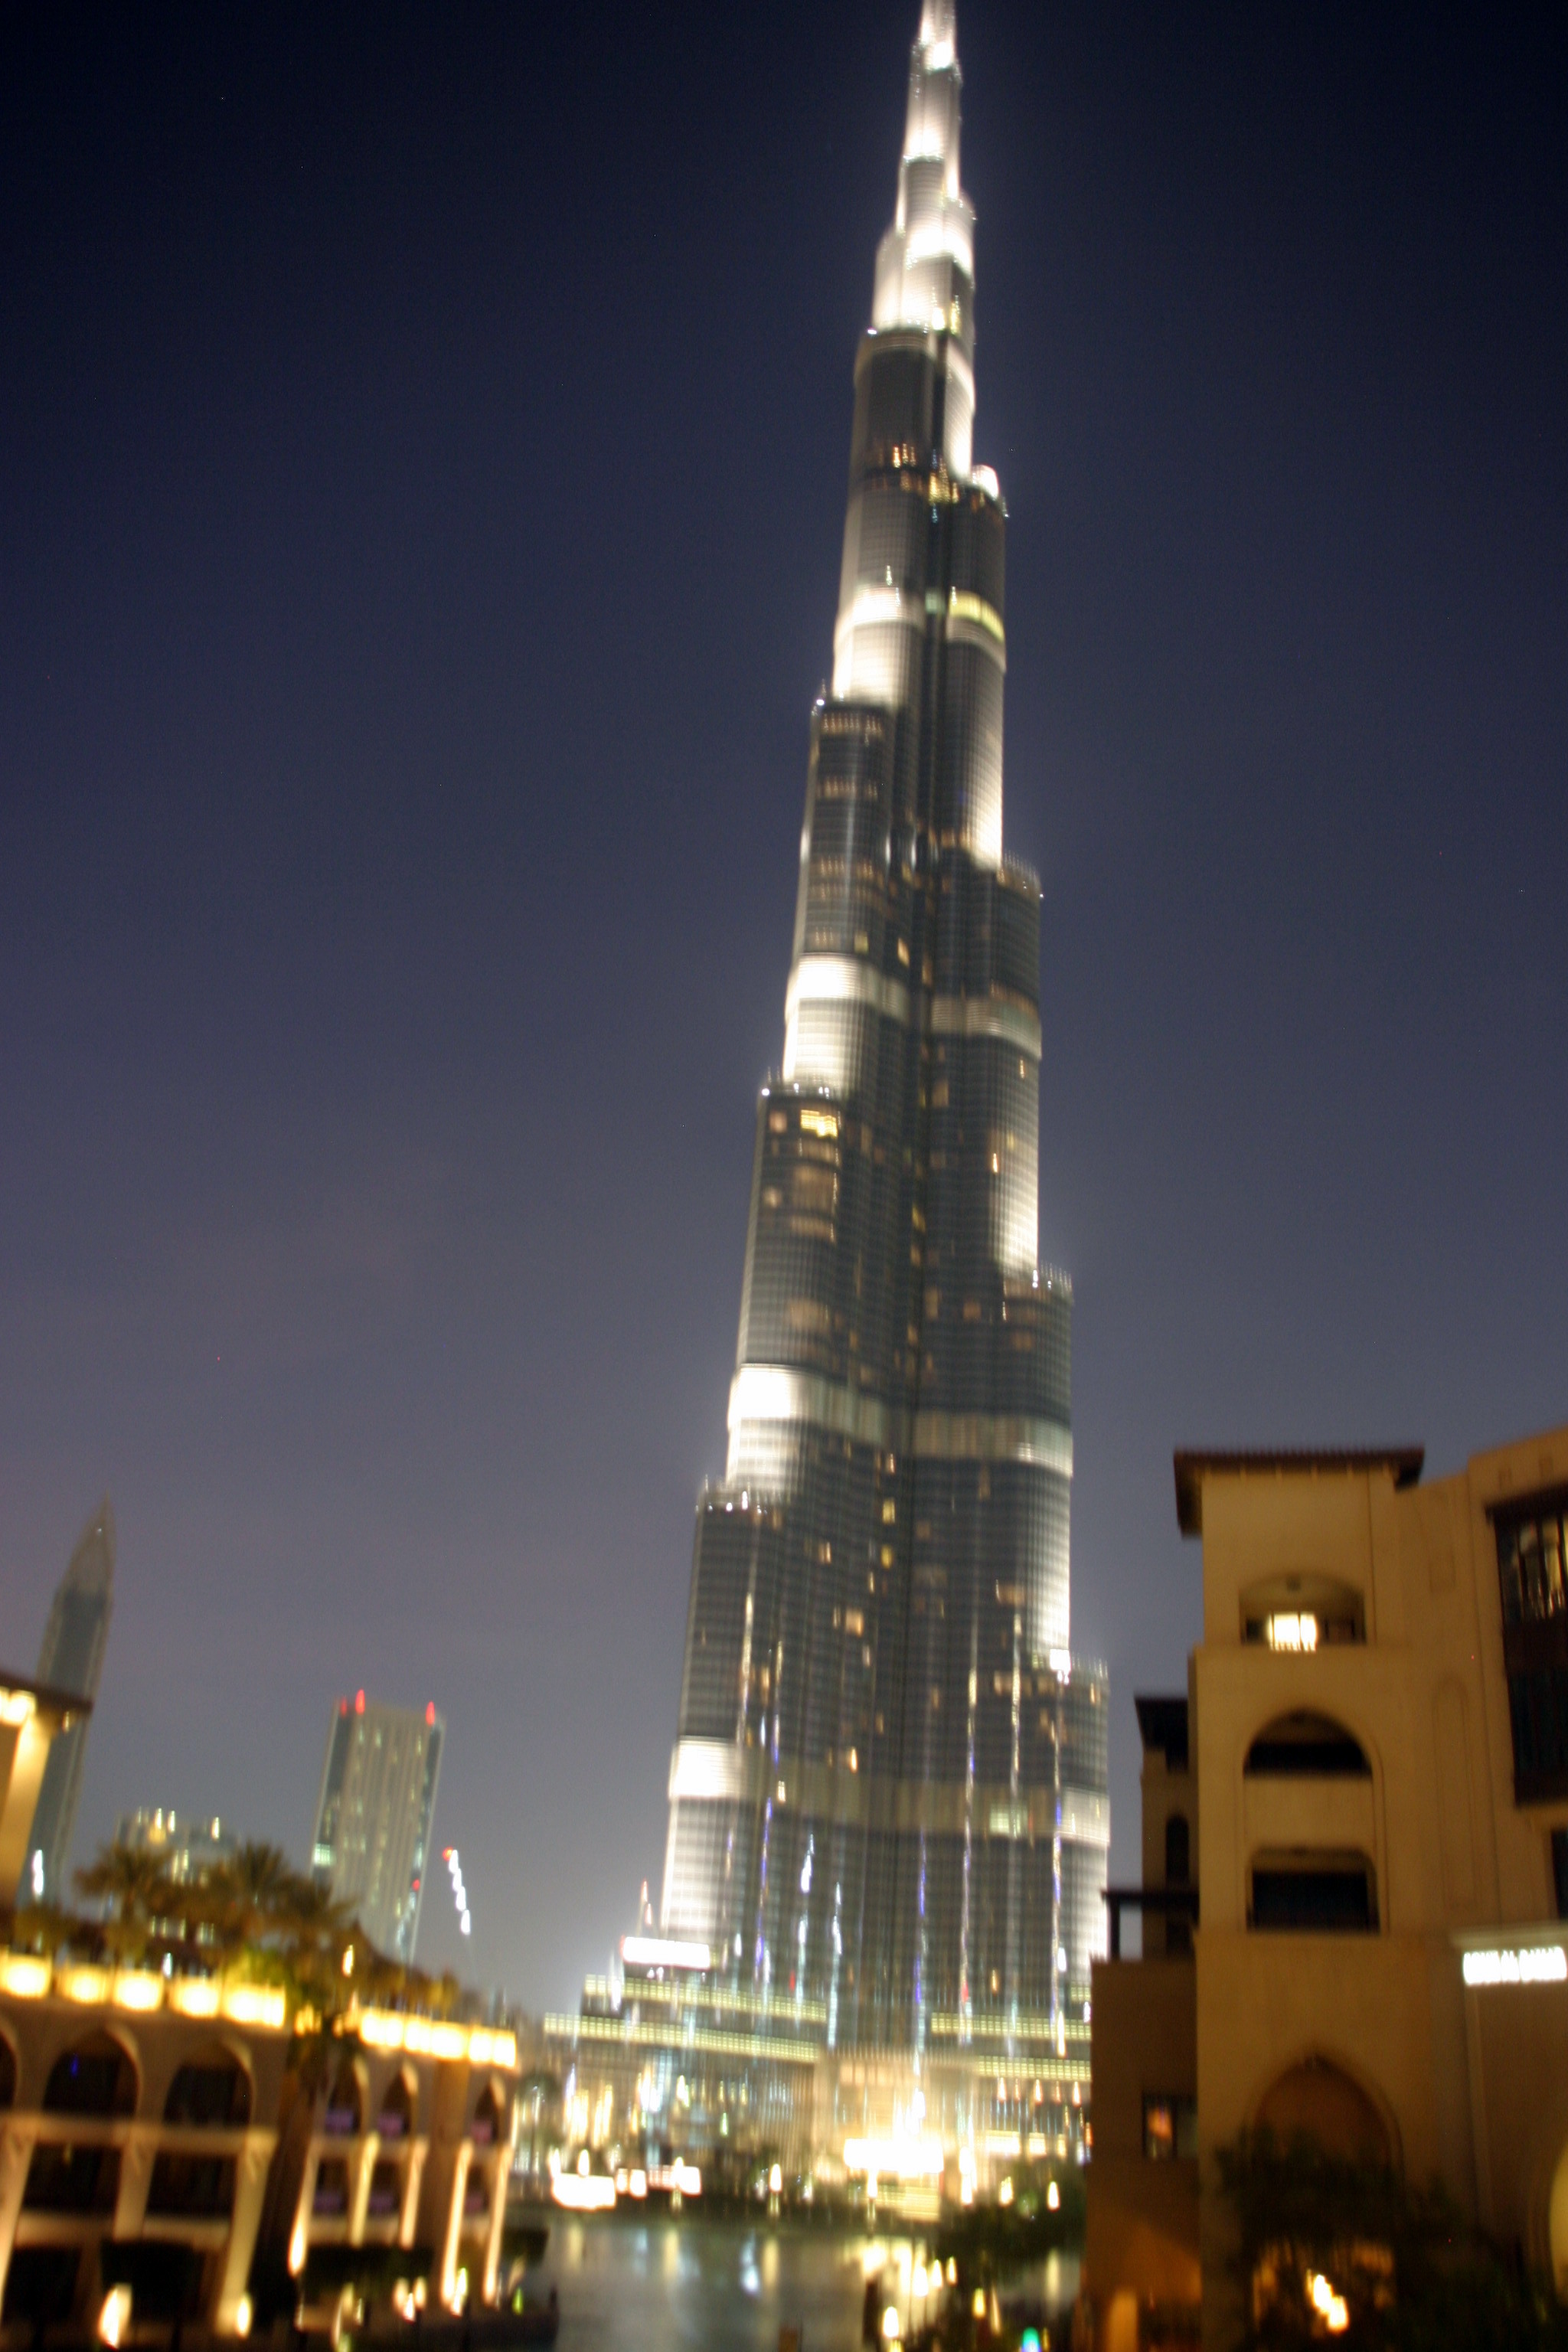 A Burj Khalifa 828 méter magasságával a világ legmagasabb felhőkarcolója, amely alaprajzát a természetből vették, mert pók liliomot alakú